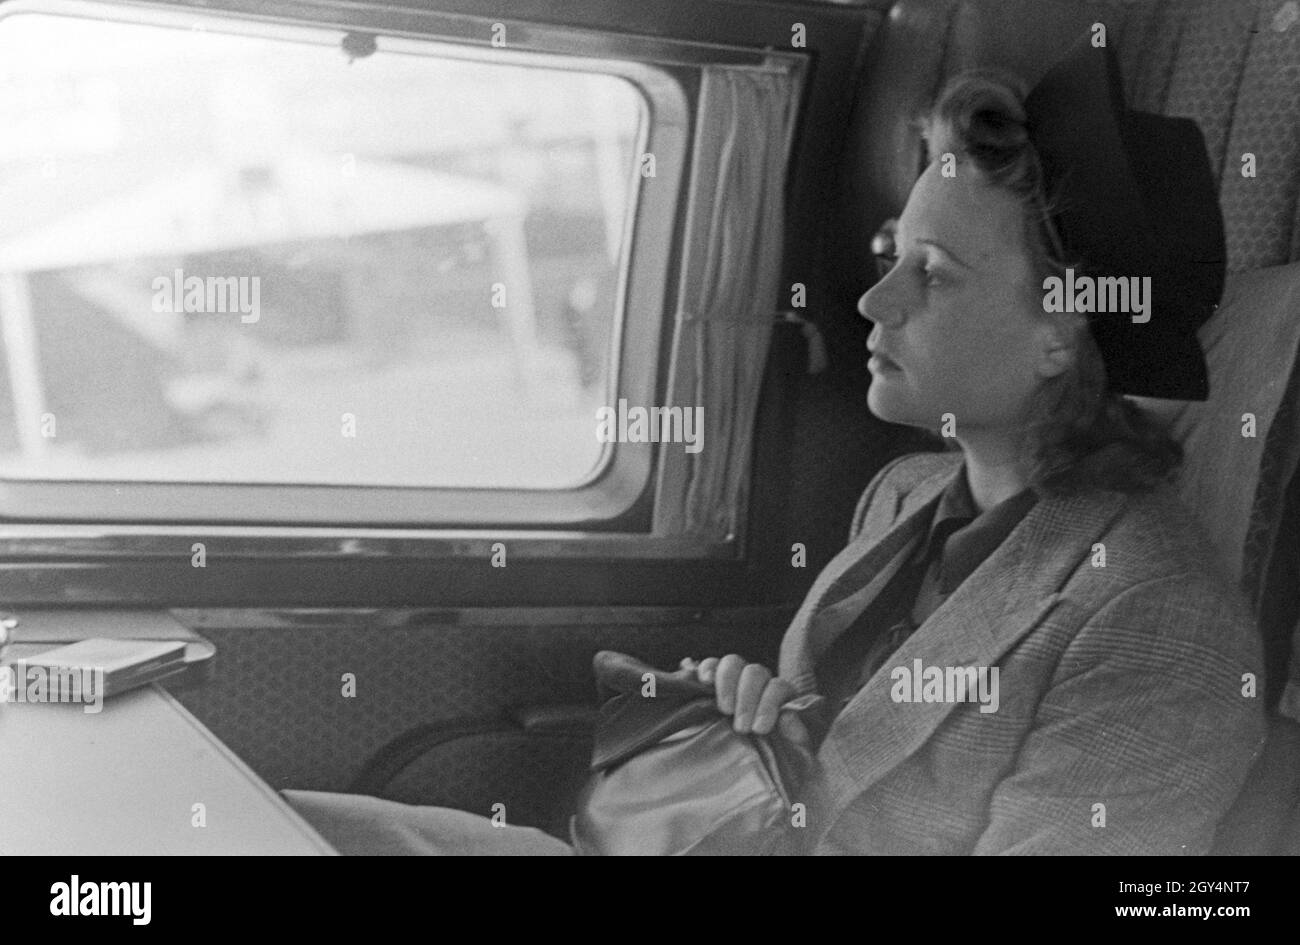 Eine Frau sitzt im Flugzeug und avviato vom Flugplatz Tempelhof di Berlino, Deutschland 1930er Jahre. Una donna seduta in un piano, pronti per il decollo dall'aeroporto Tempelhof di Berlino, Germania 1930s. Foto Stock